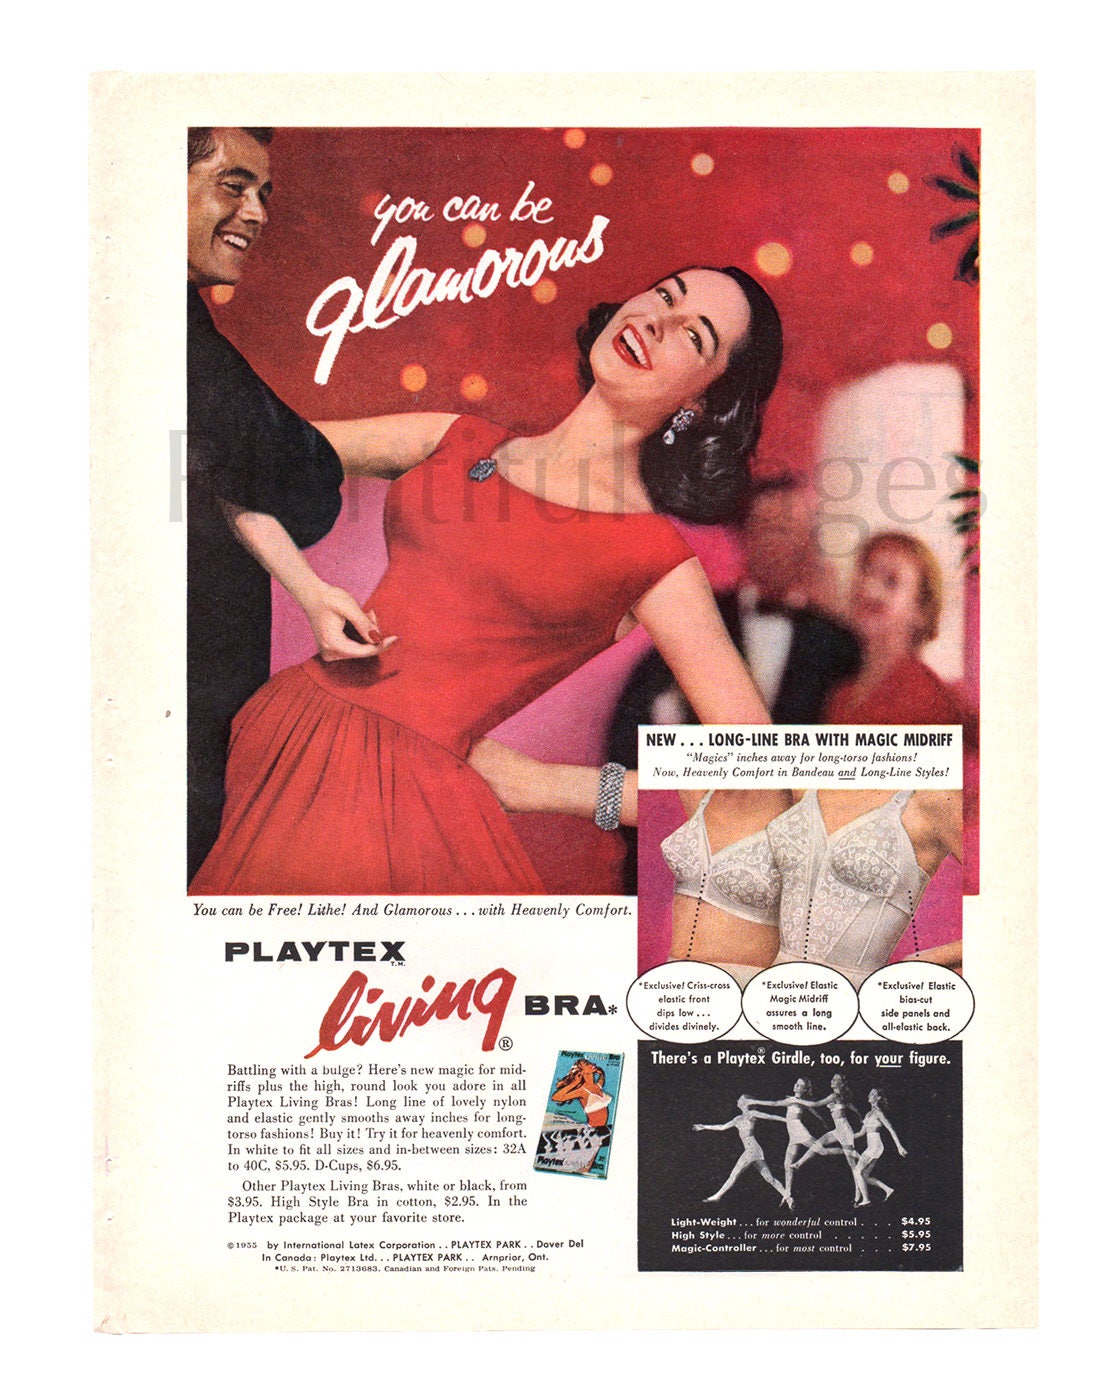 honing Email schrijven Psychiatrie 1956 Playtex beha Vintage Ad mode van de jaren 1950 reclame | Etsy